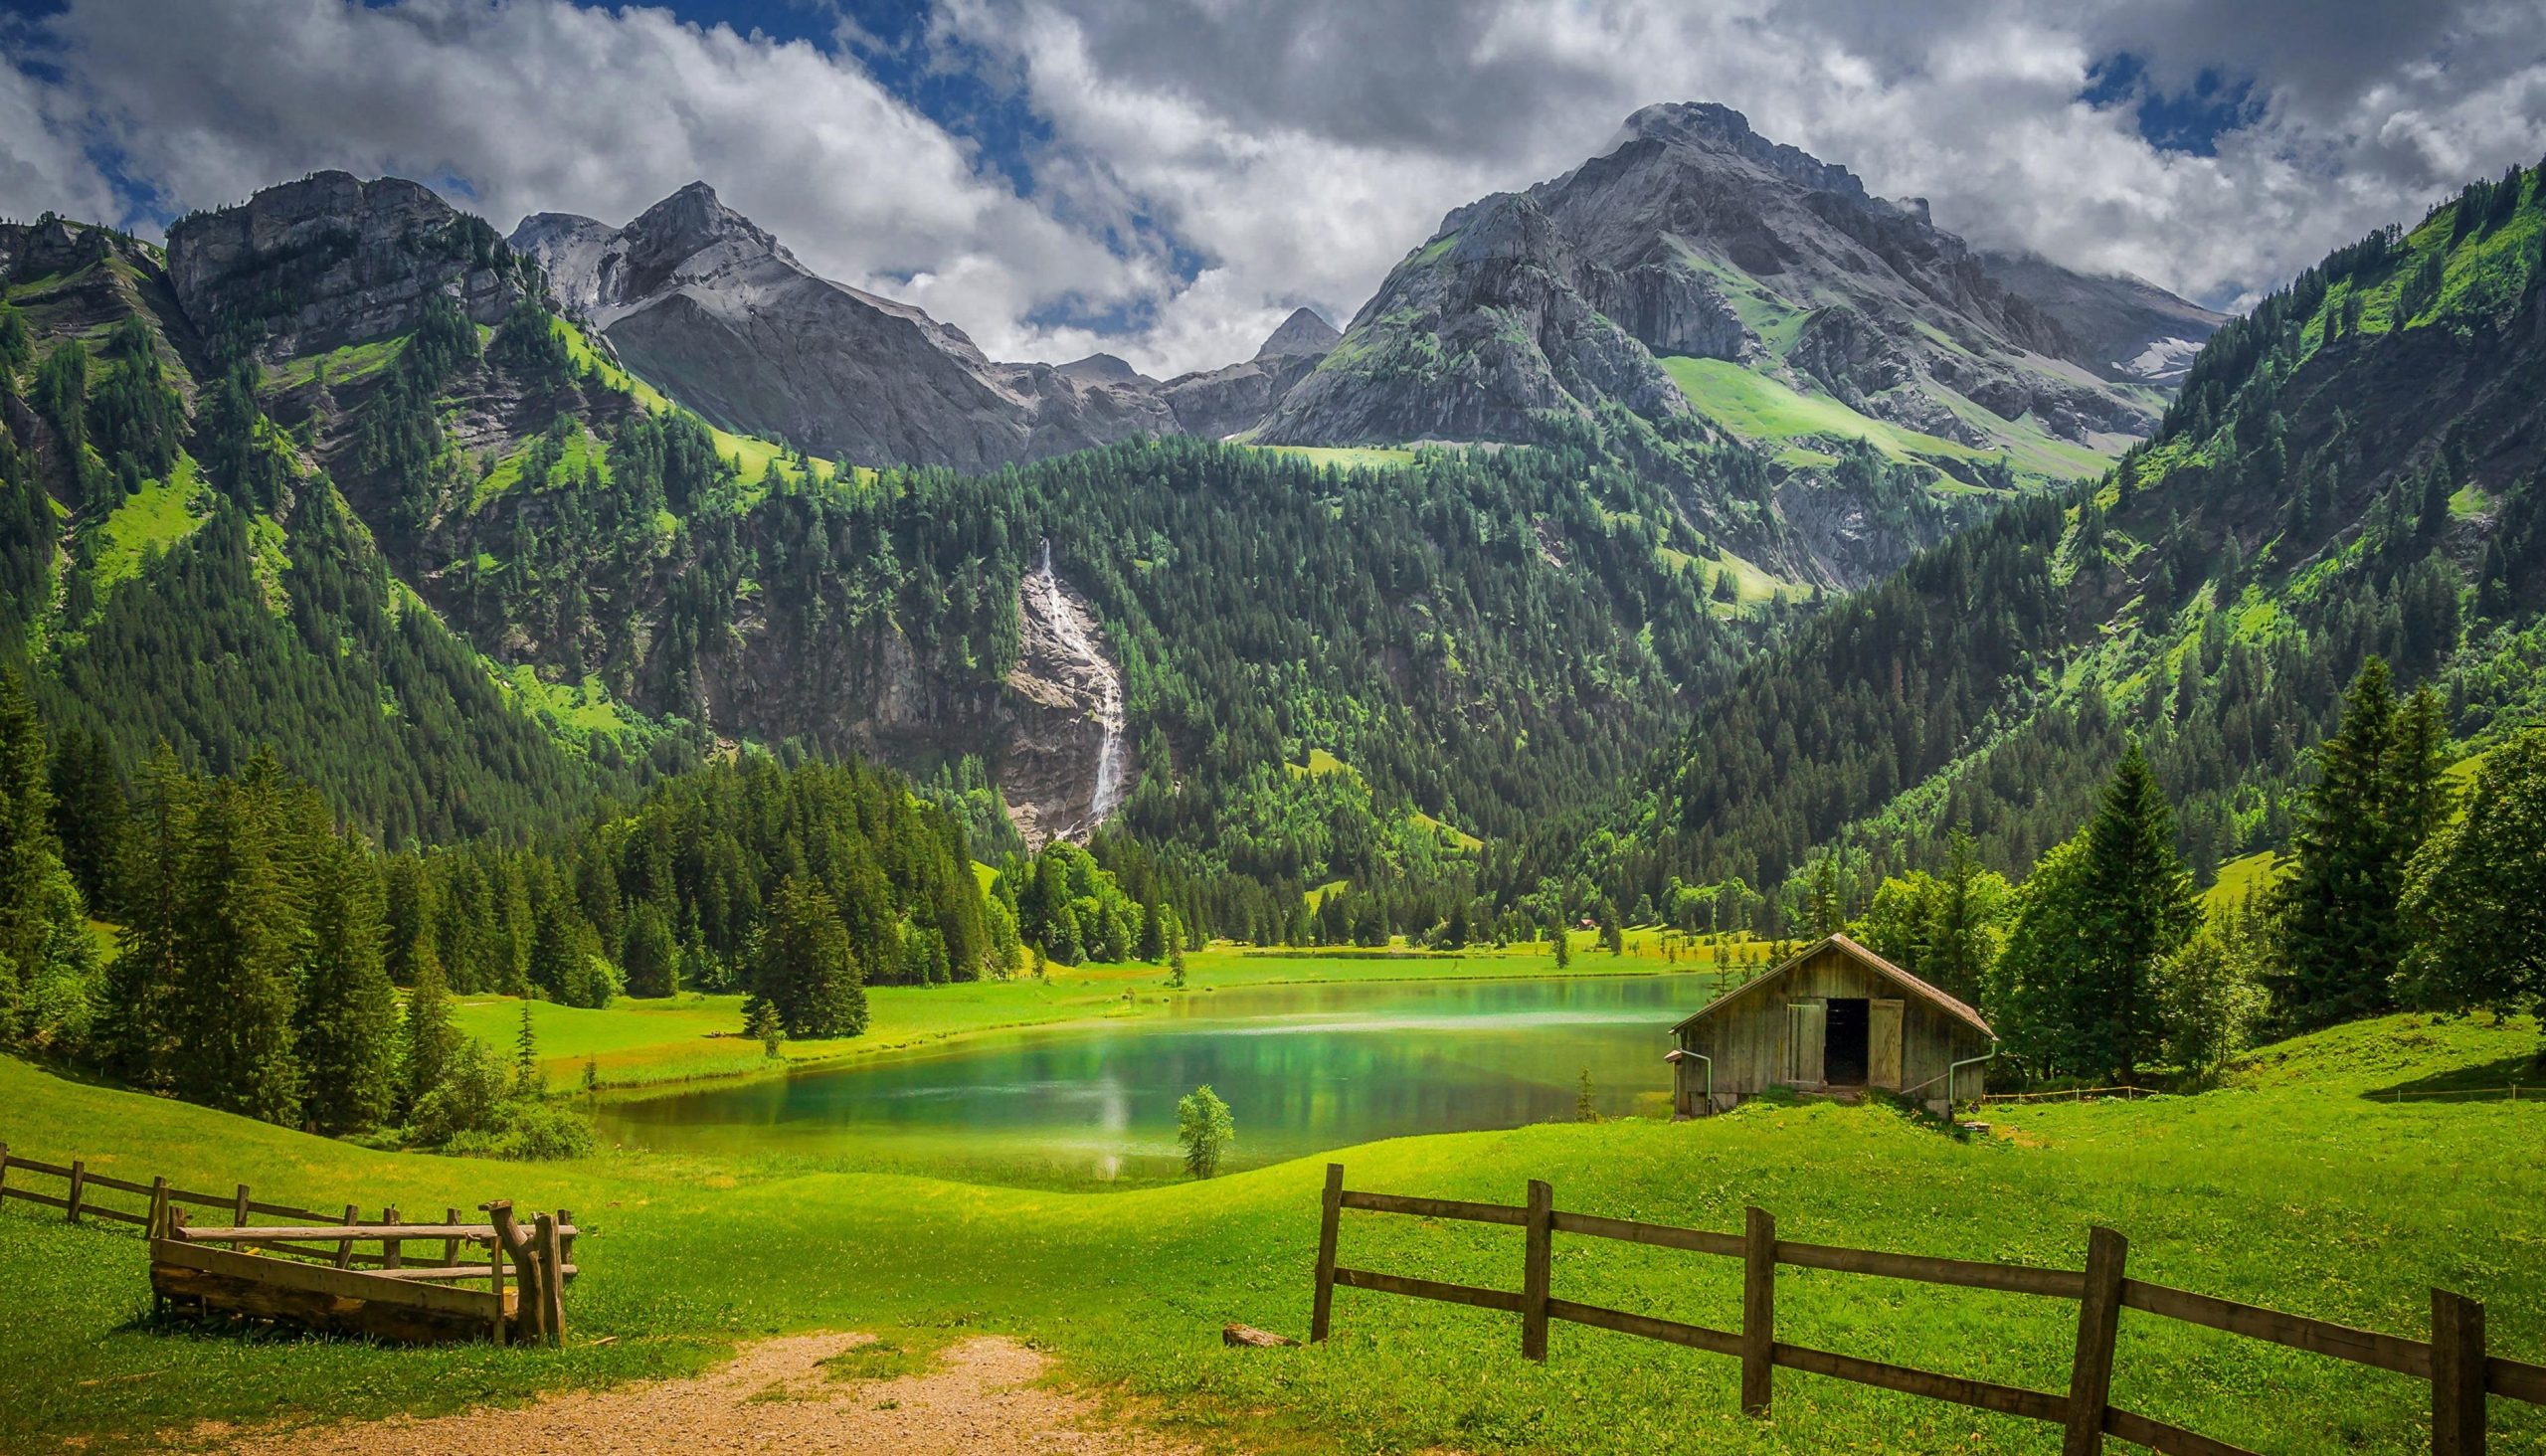 فصل سفر به سوئیس - عکس طبیعت زیبای سوئیس